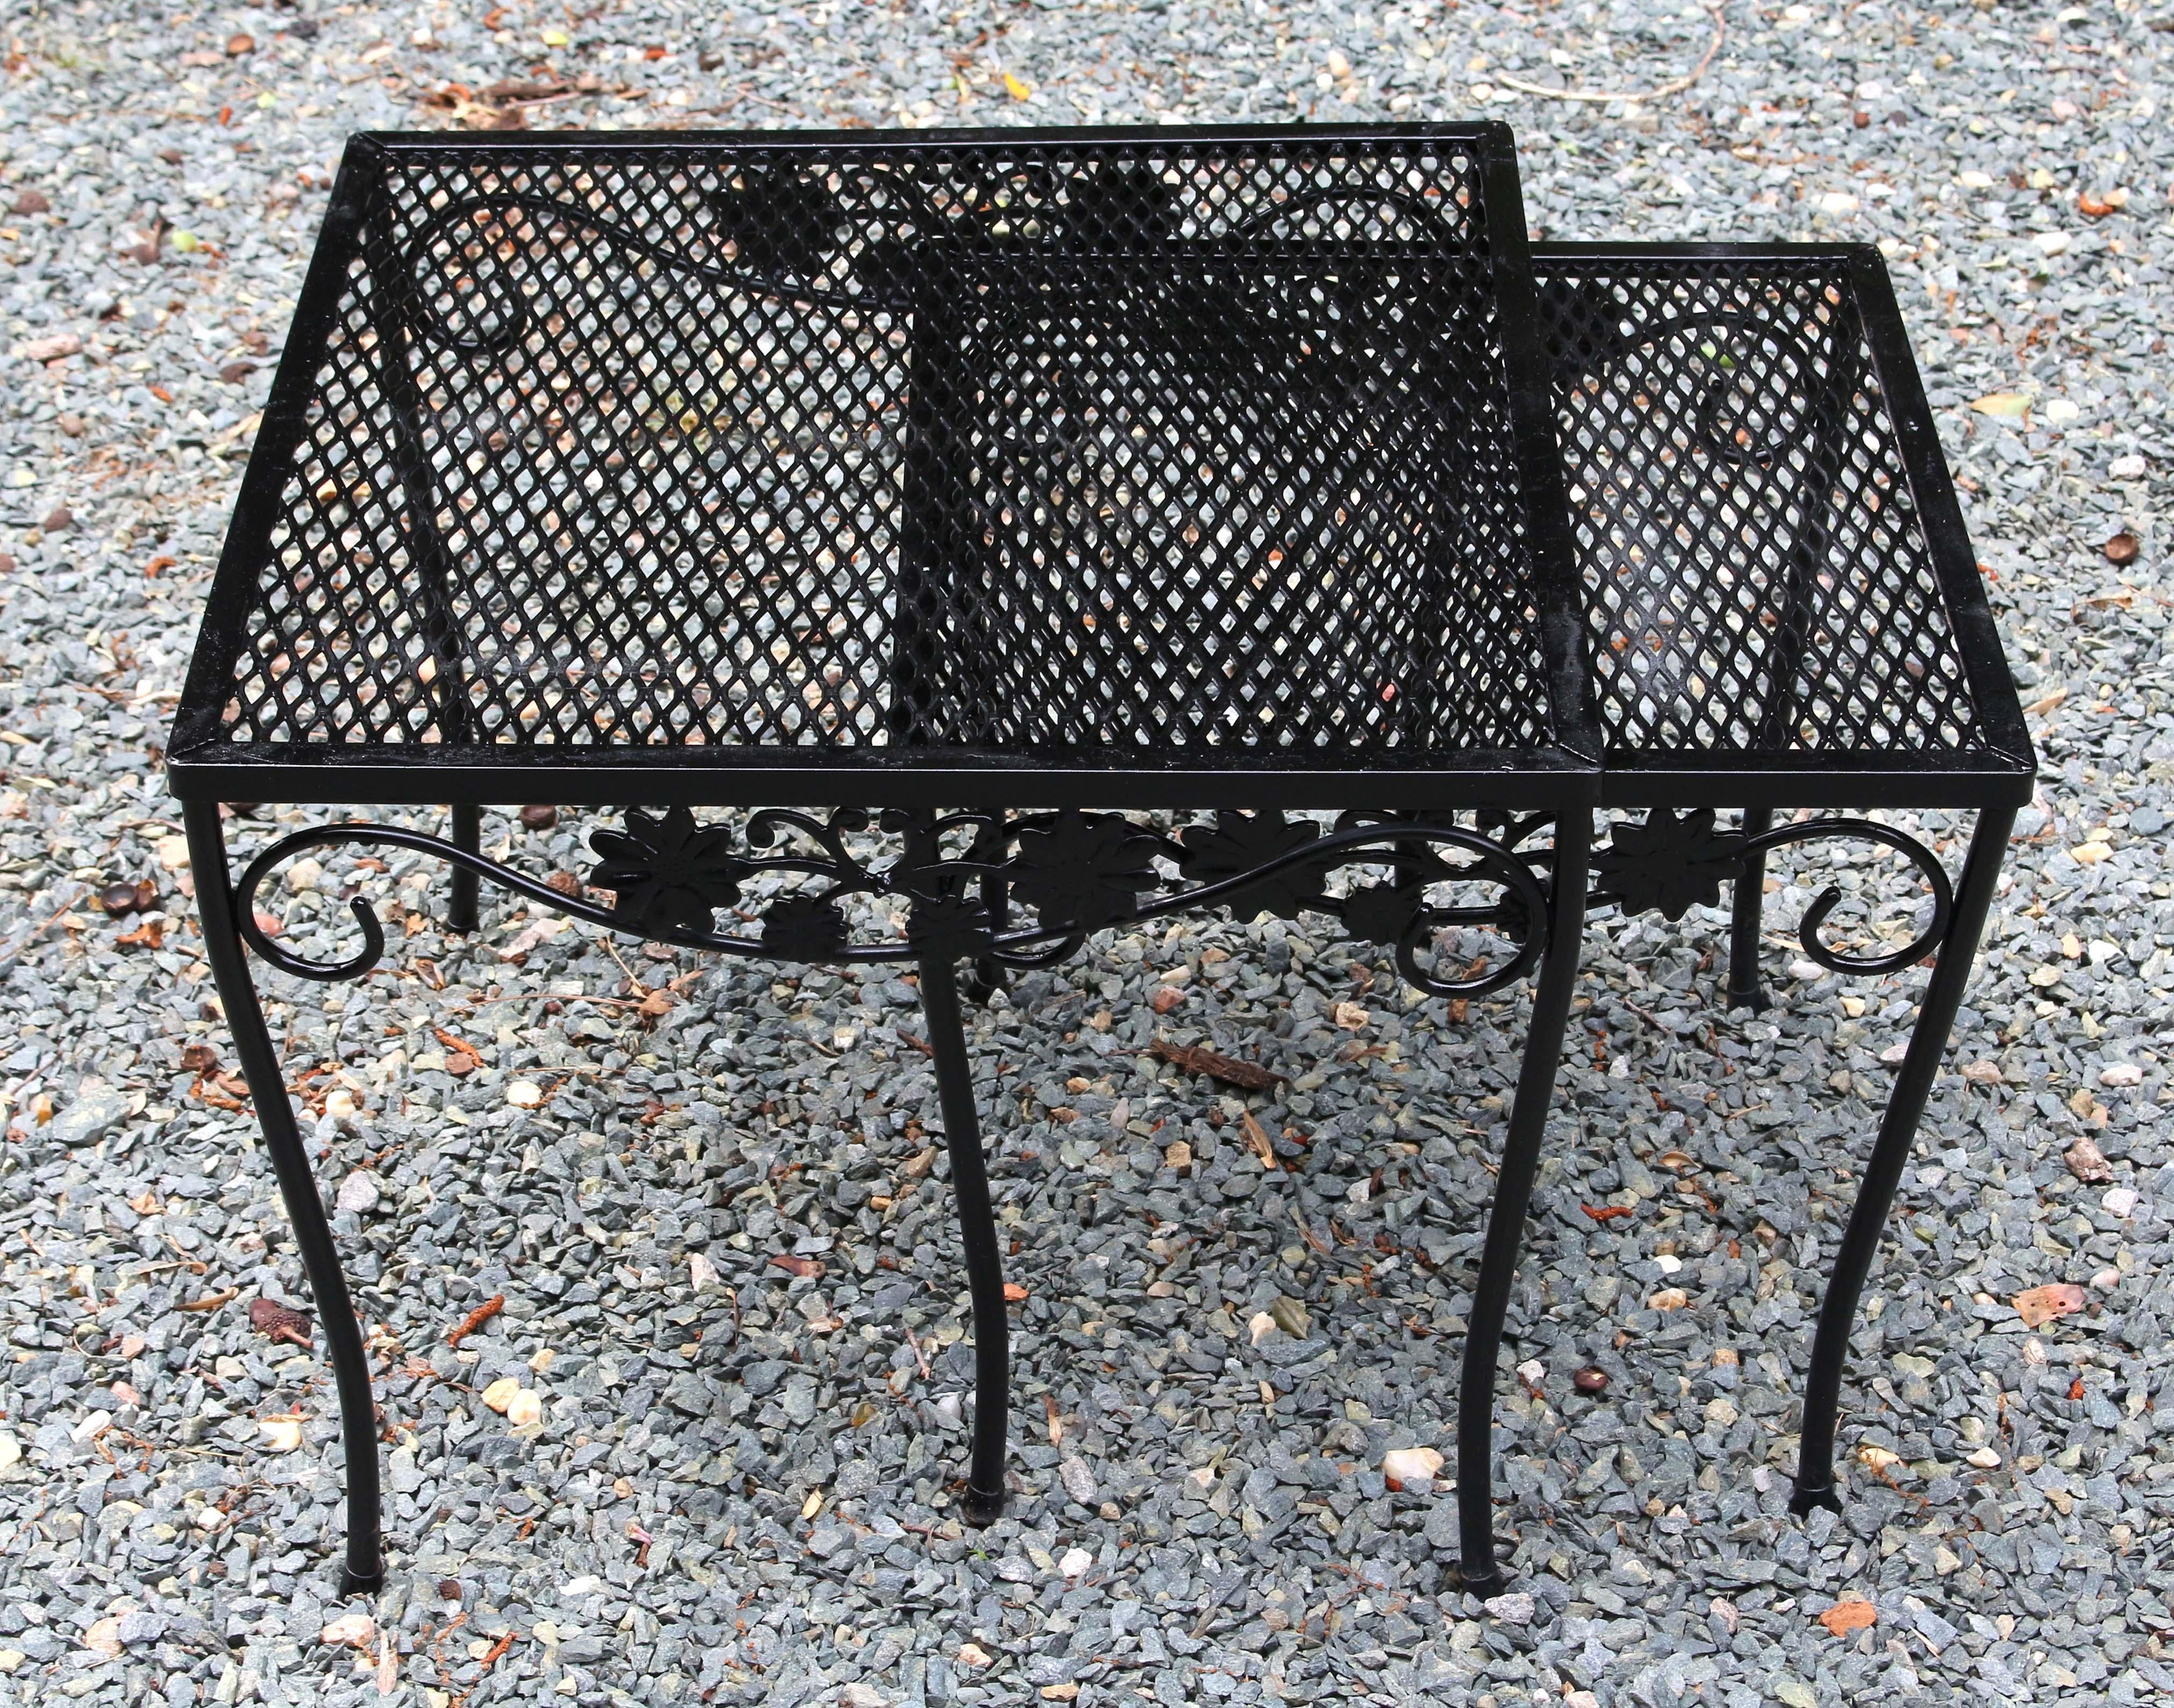 Vintage Woodard set de deux tables gigognes d'extérieur, motif Briarwood, non étiqueté. Surfaces repeintes.
Plus grand : 19.5